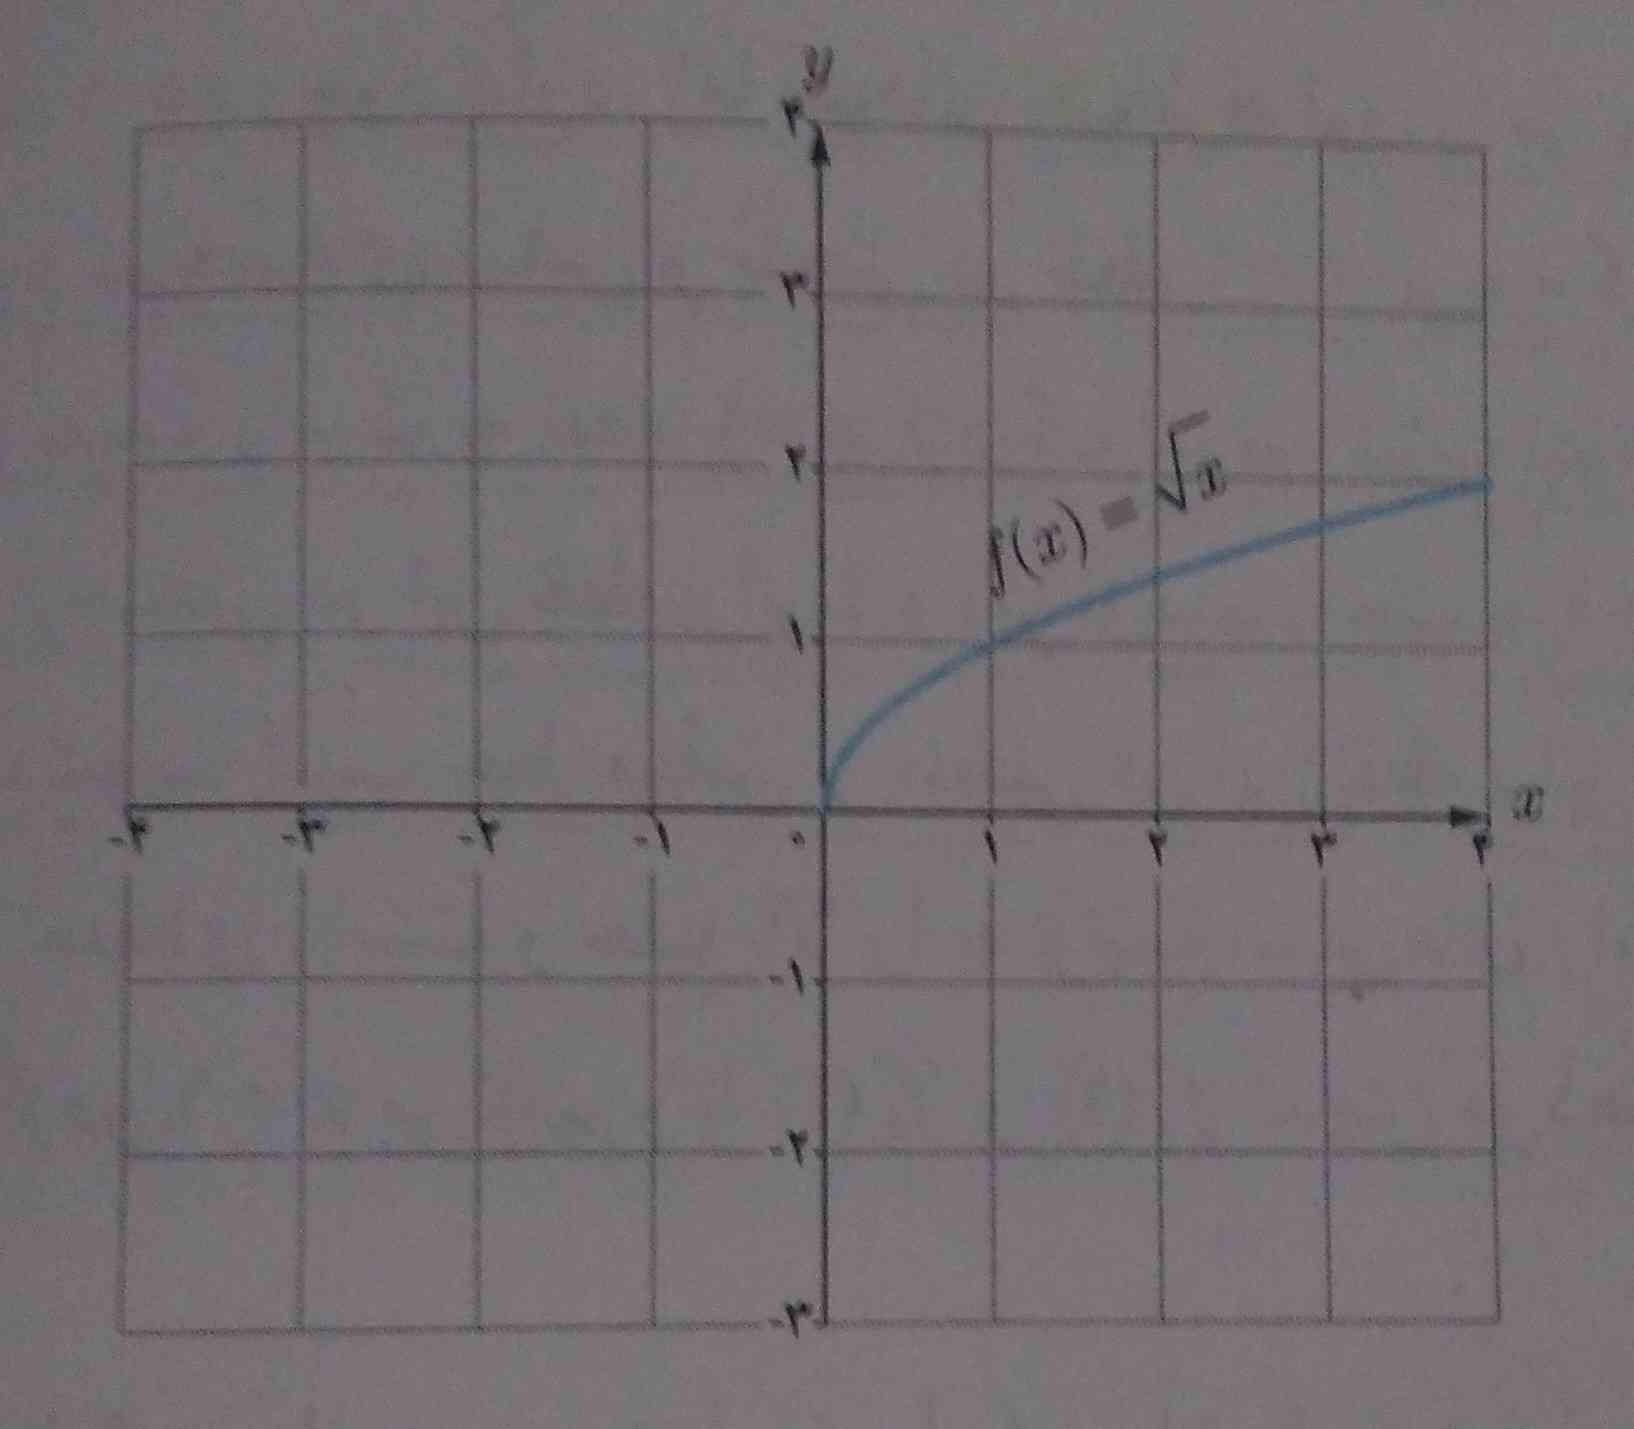 توی صحفه 80 ریاضی نوشته که 
این نمودار در نقطه صفر پیوسته نیست. 
سوالم اینه ک چرا پیوسته نیس؟ مگ تیکه تیکه س؟:/